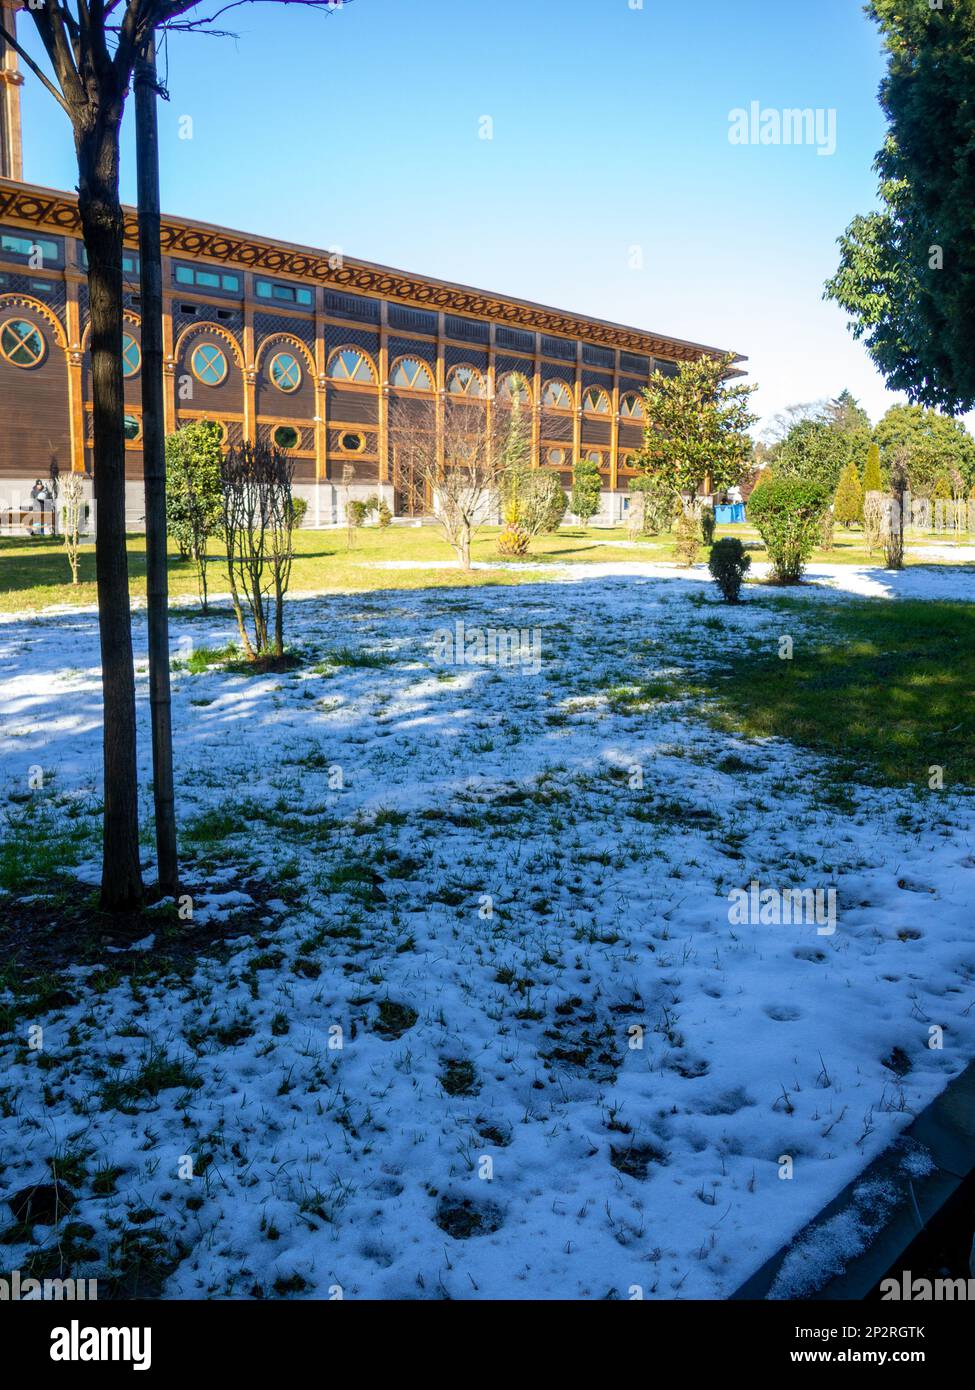 Neige sur un palmier et sur l'herbe verte. Hiver à Batumi. L'hiver dans le parc de la station de la ville du sud. Chute soudaine de neige. Contraste Banque D'Images